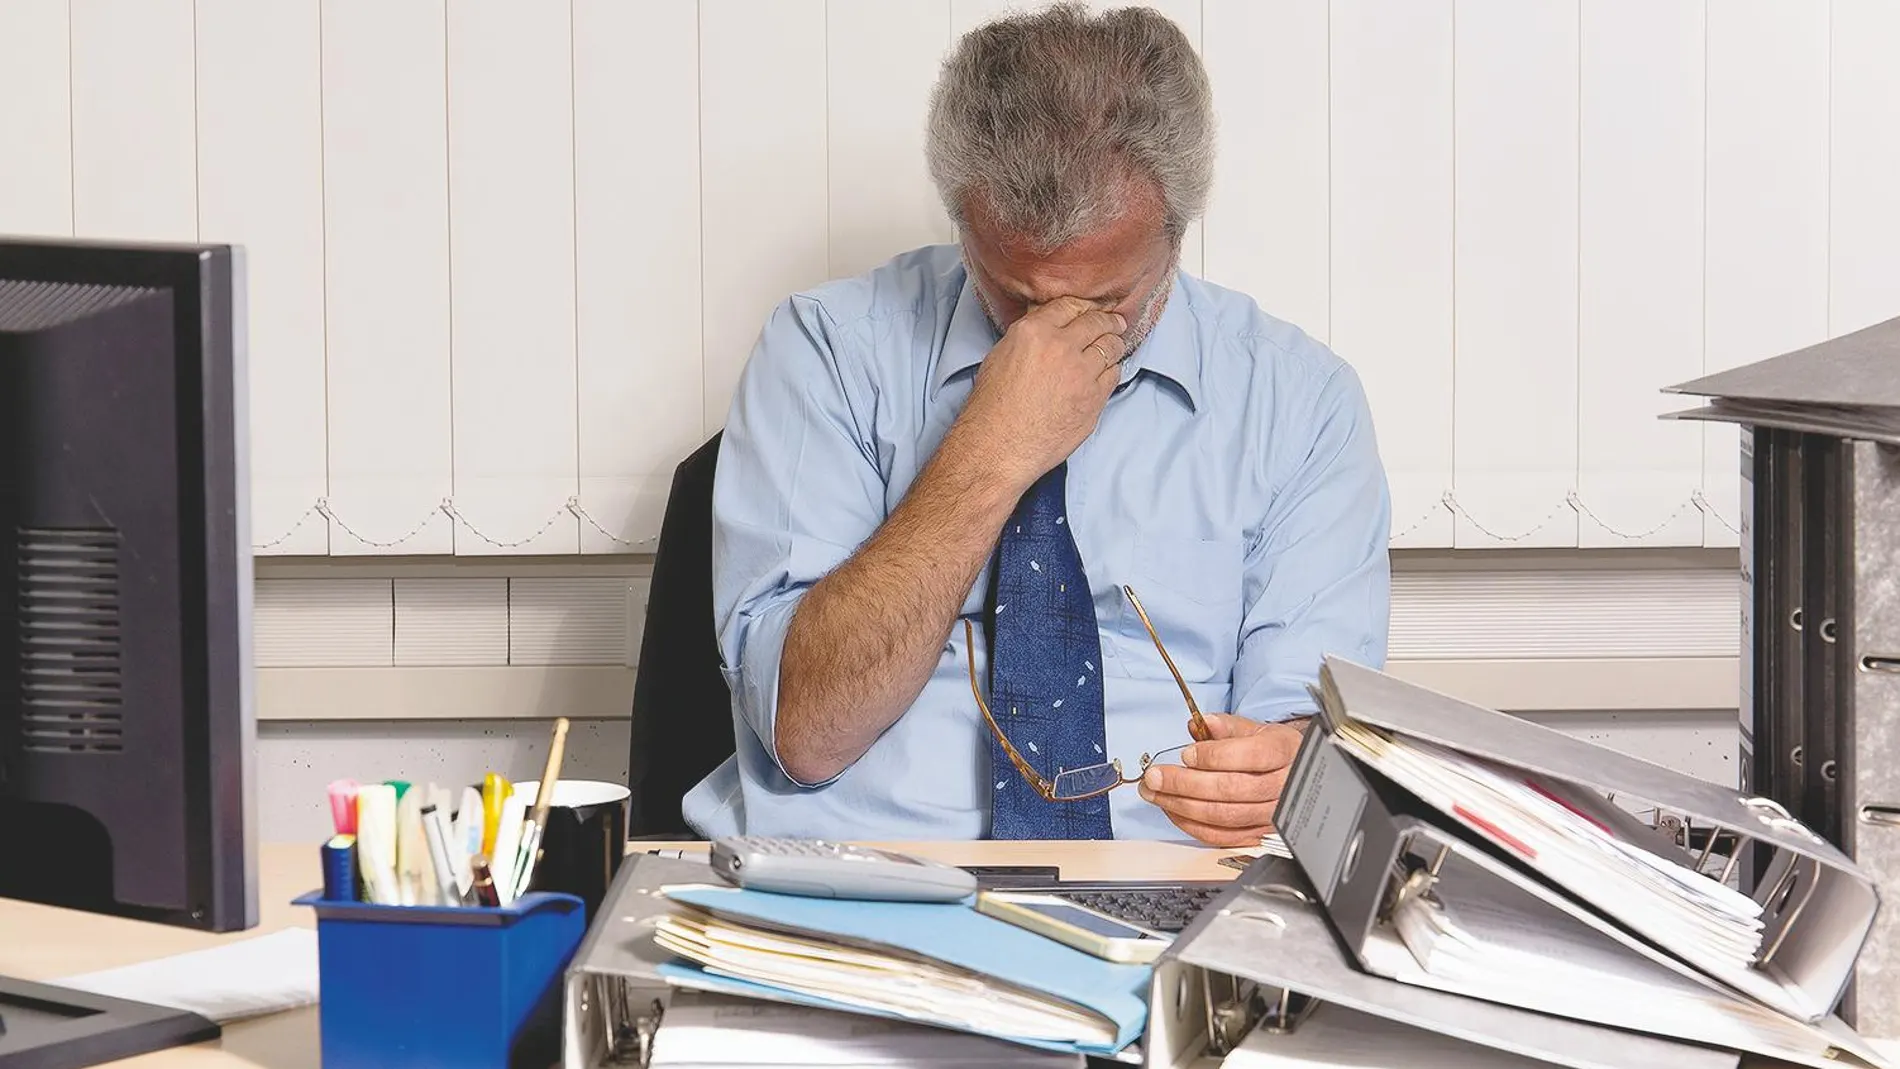 Los jefes tienen la responsabilidad de fomentar un entorno laboral que esquive el «burnout»